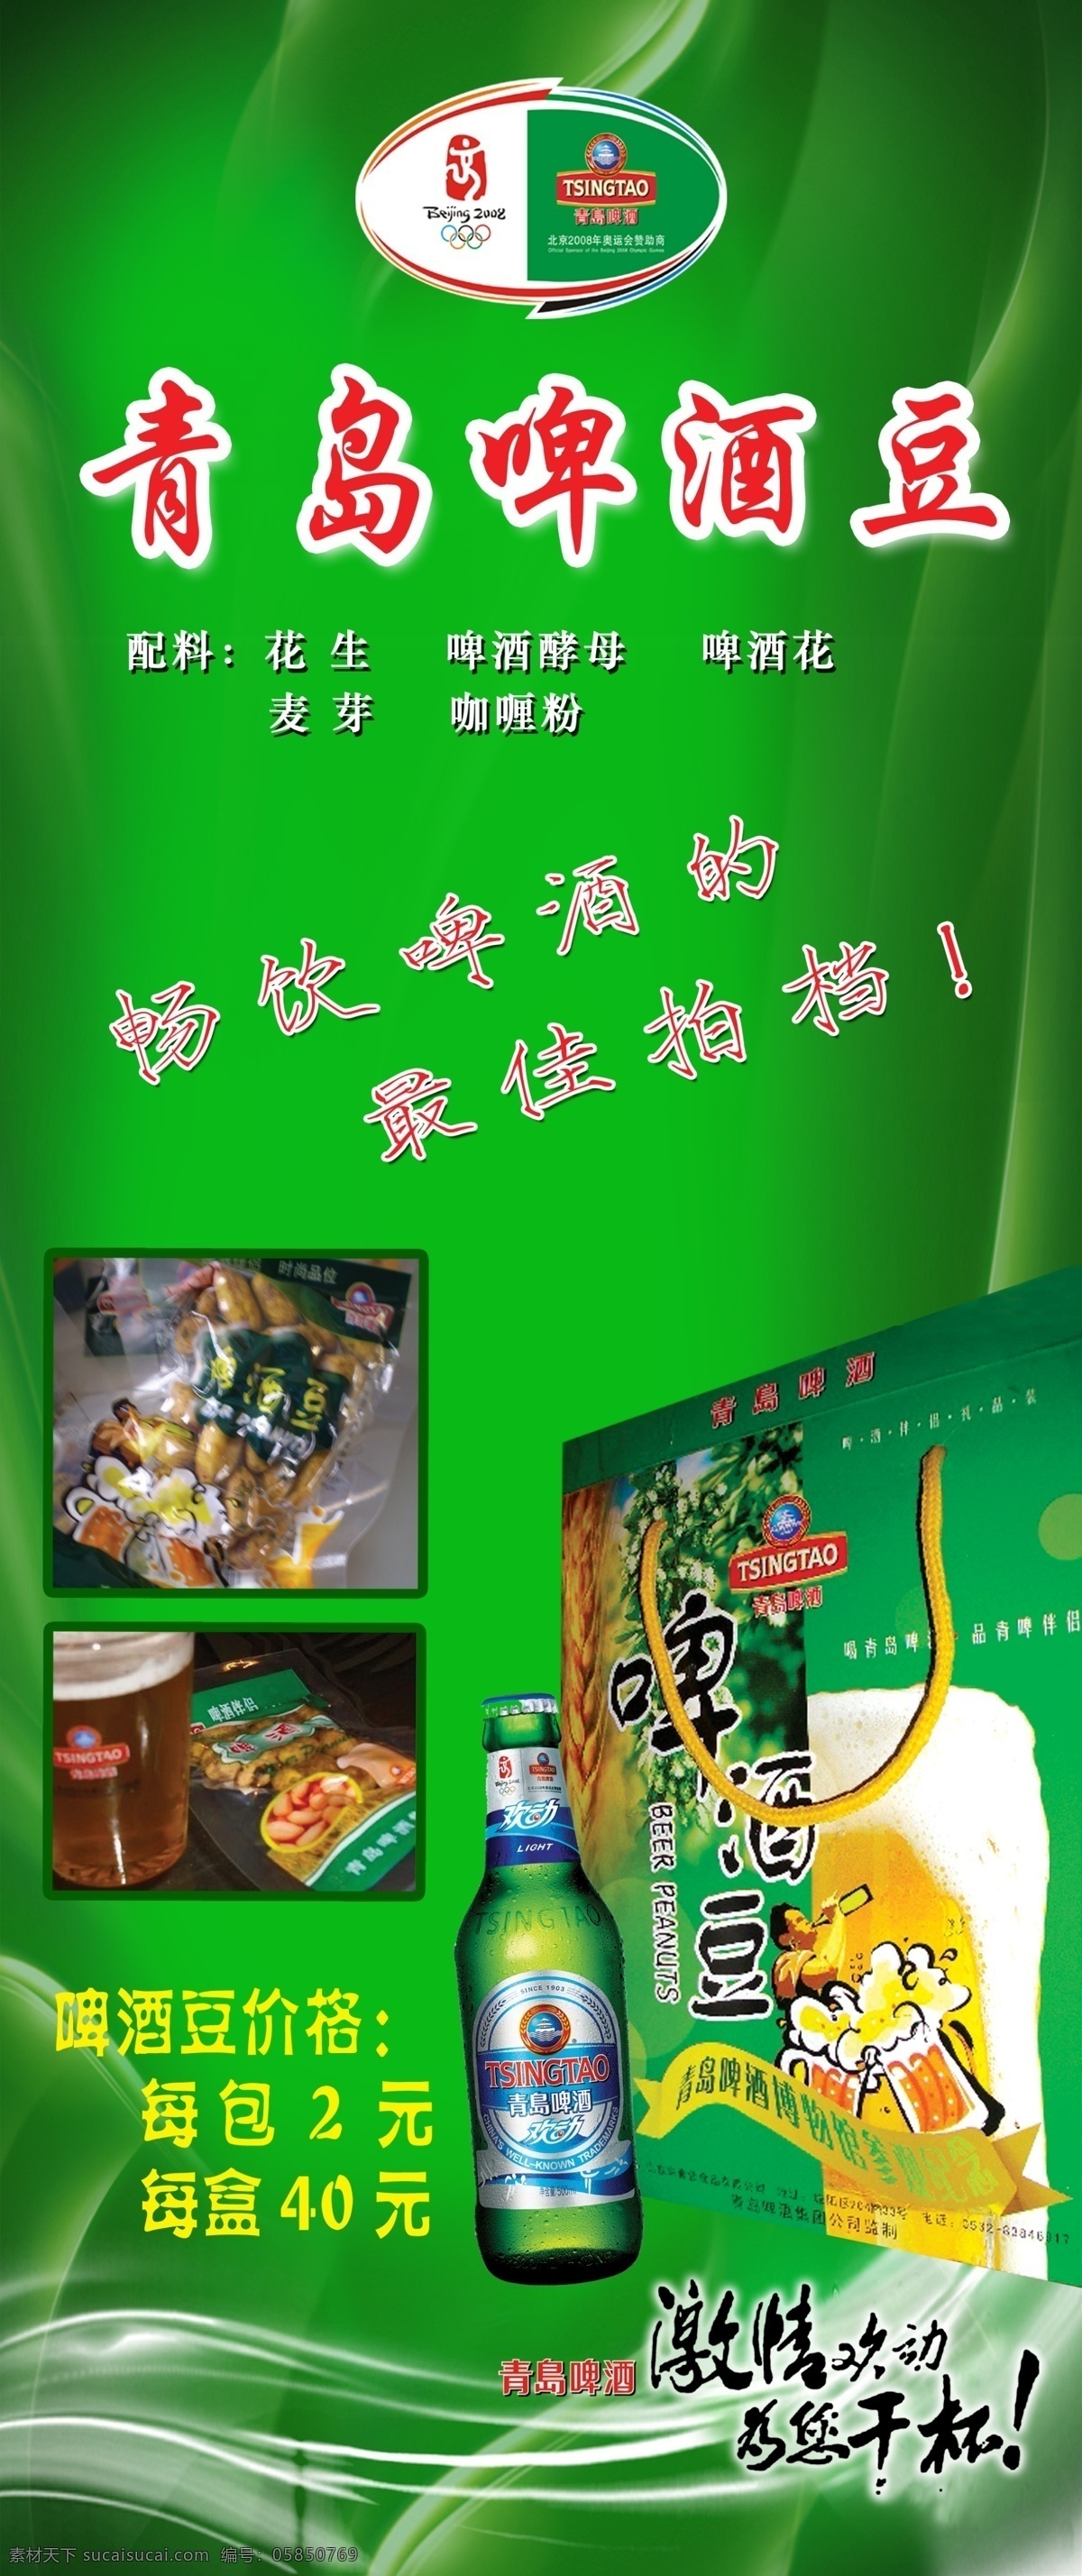 青岛啤酒 豆 海报 啤酒豆包装 绿色动感背景 啤酒 外包装 手提袋 奥运 标志 广告设计模板 源文件